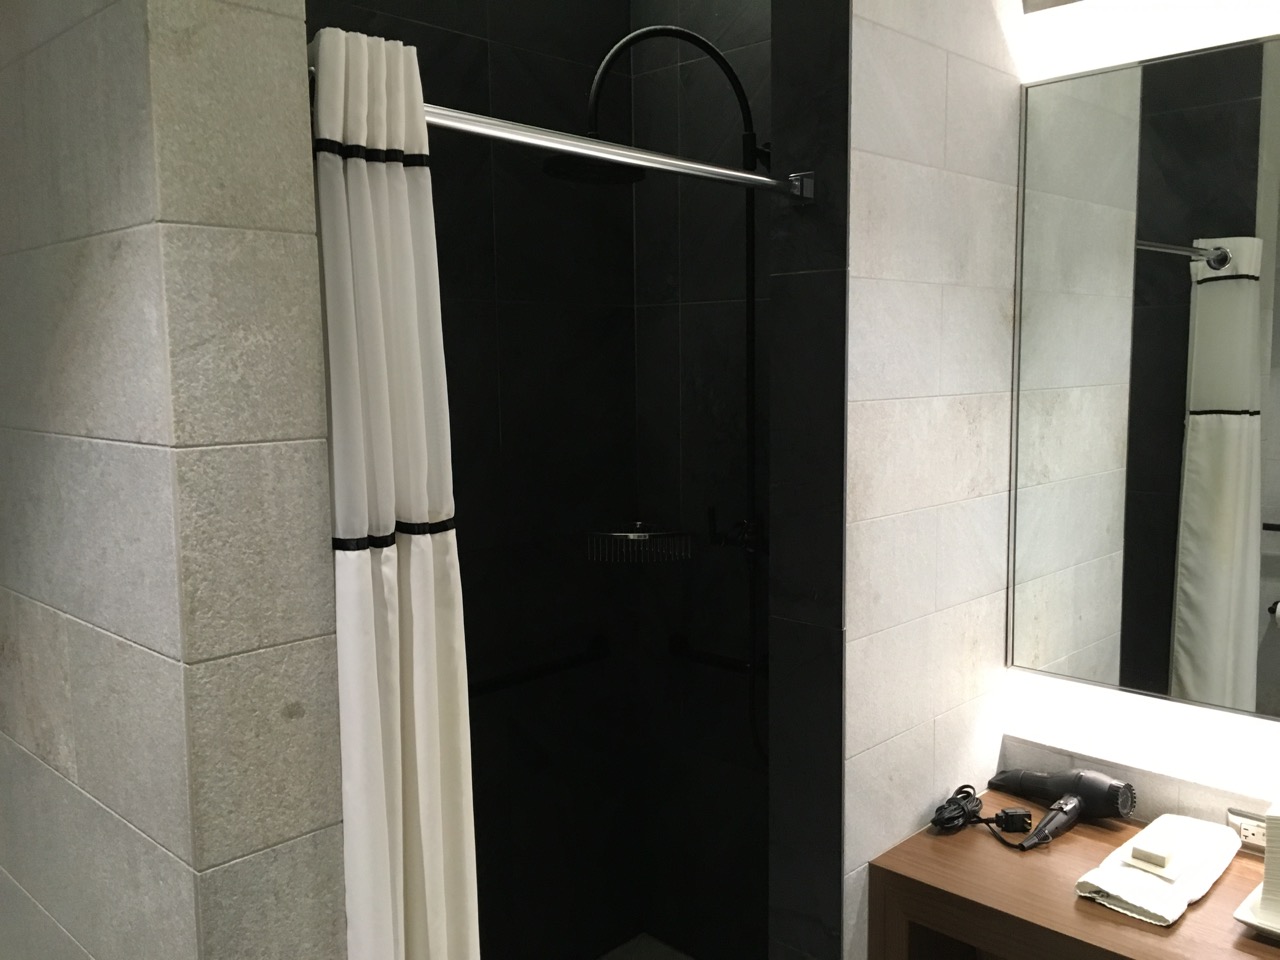 AMEX Centurion Lounge DFW Shower Room